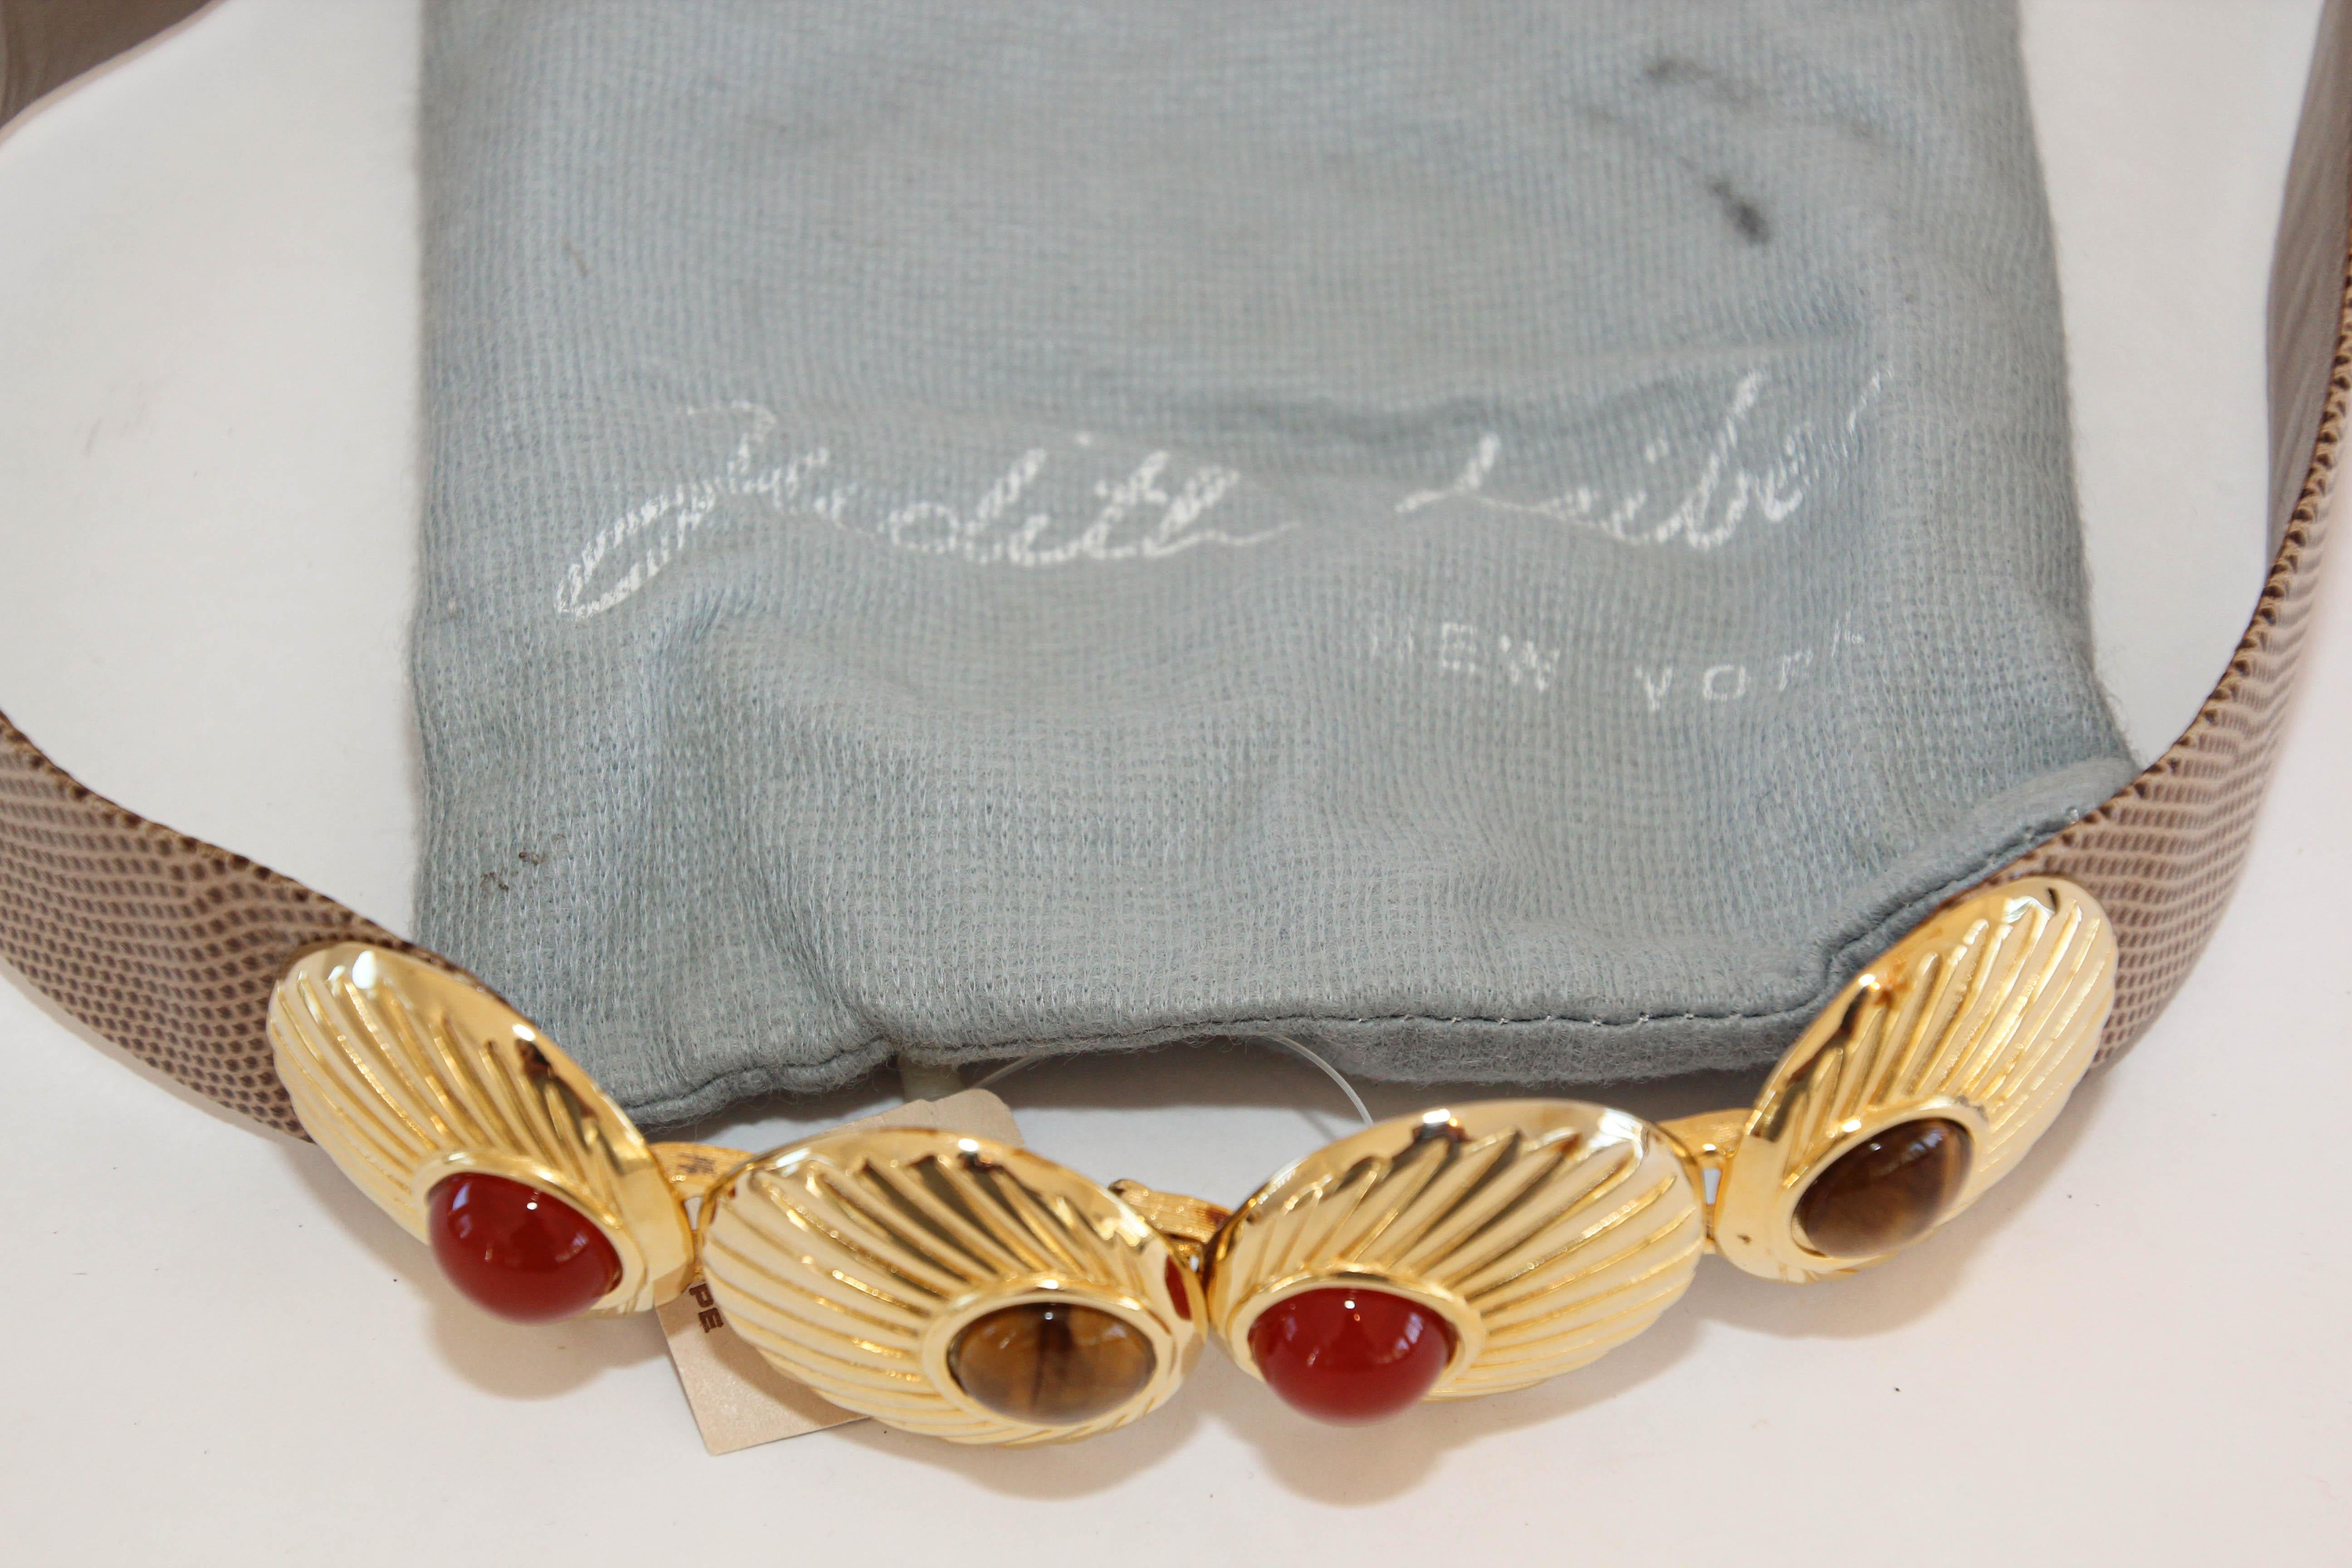 Opulenter Judith Leiber Gürtel aus Schlangenleder und Gold mit Halbedelsteinen aus den 1980er Jahren.
Die Kreativität von Judith Leiber, die für ihre fantastischen Handtaschen bekannt ist, setzte sich auch bei Accessoires fort, wie zum Beispiel bei